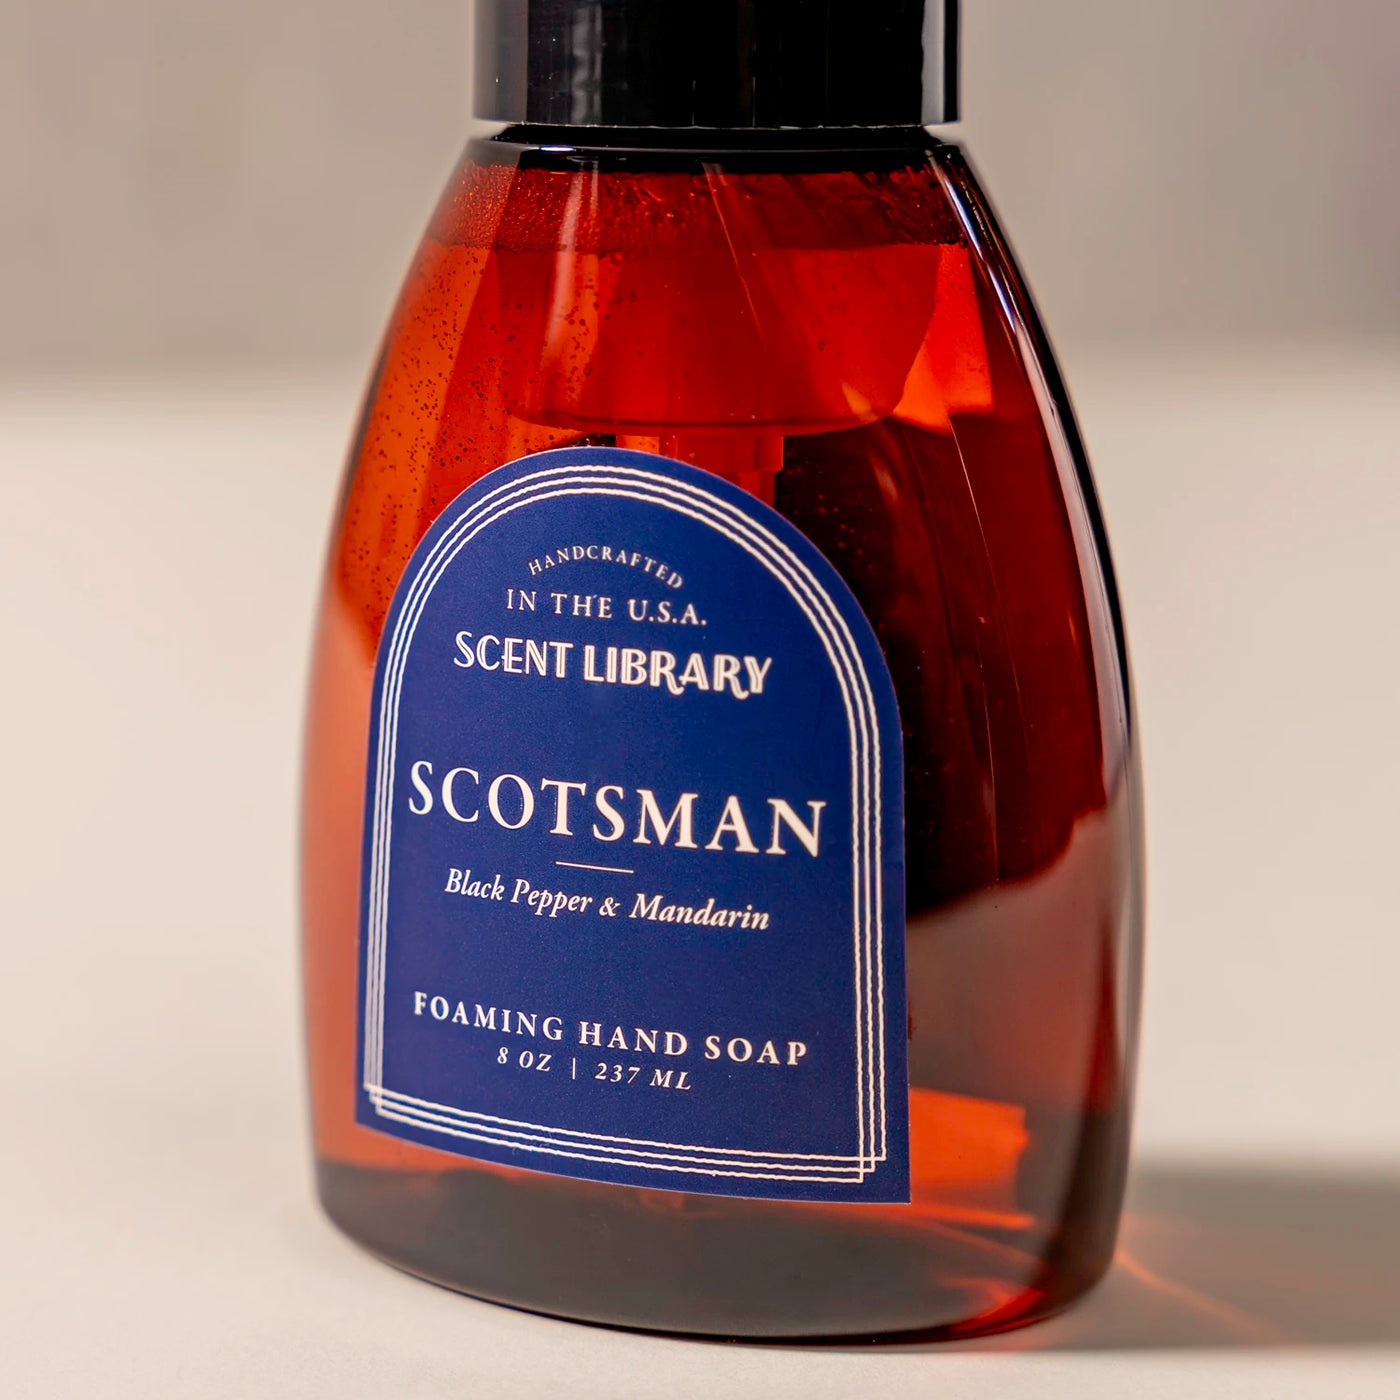 Scotsman Foaming Hand Soap